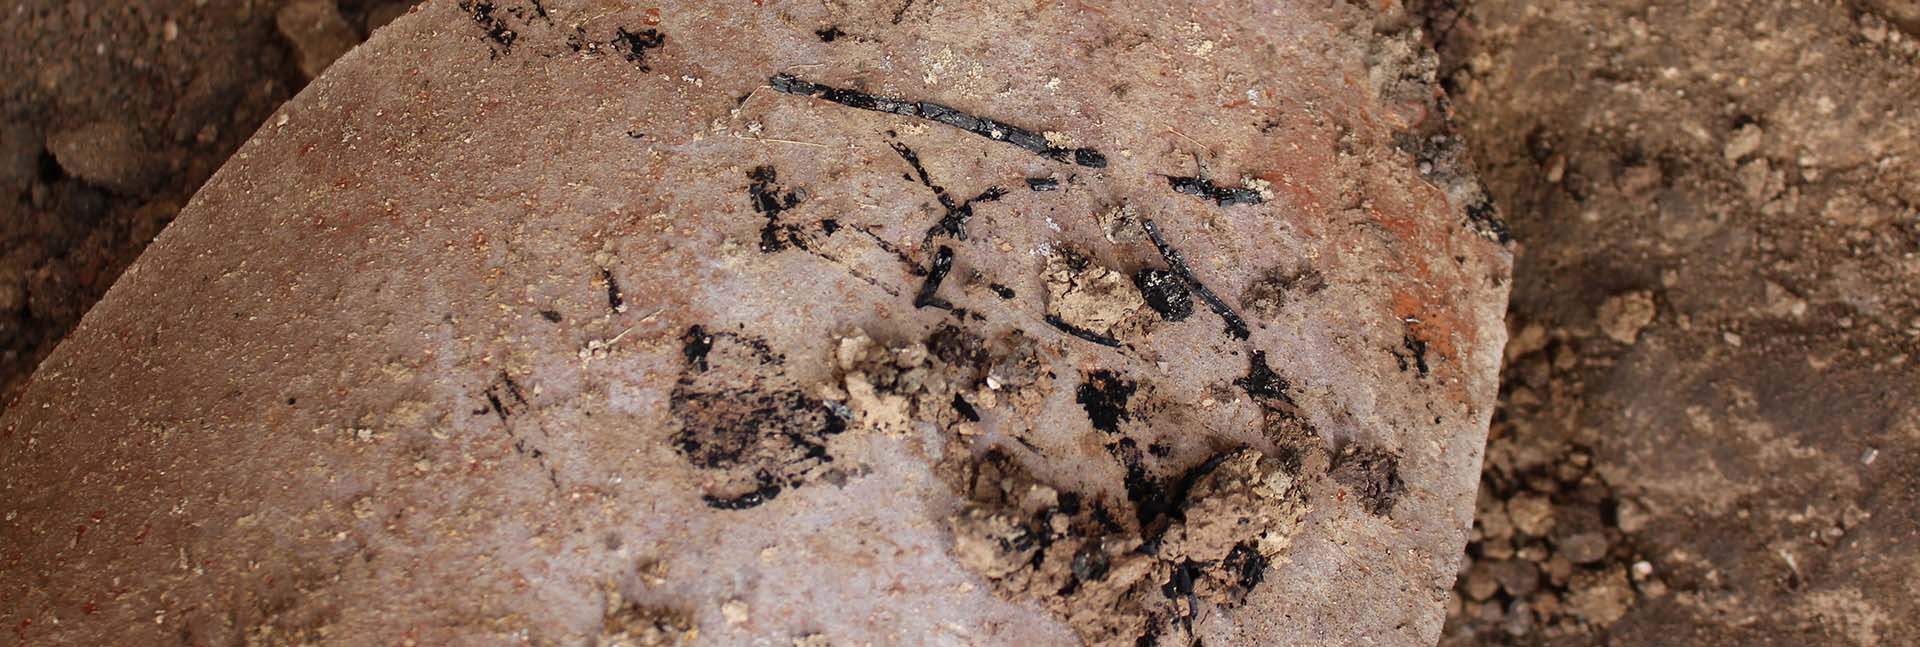 שרידי קש חרוך על כד מתקופת חורבן בית ראשון, 586 לפני הספירה (תצלום: יוהנה רגב)